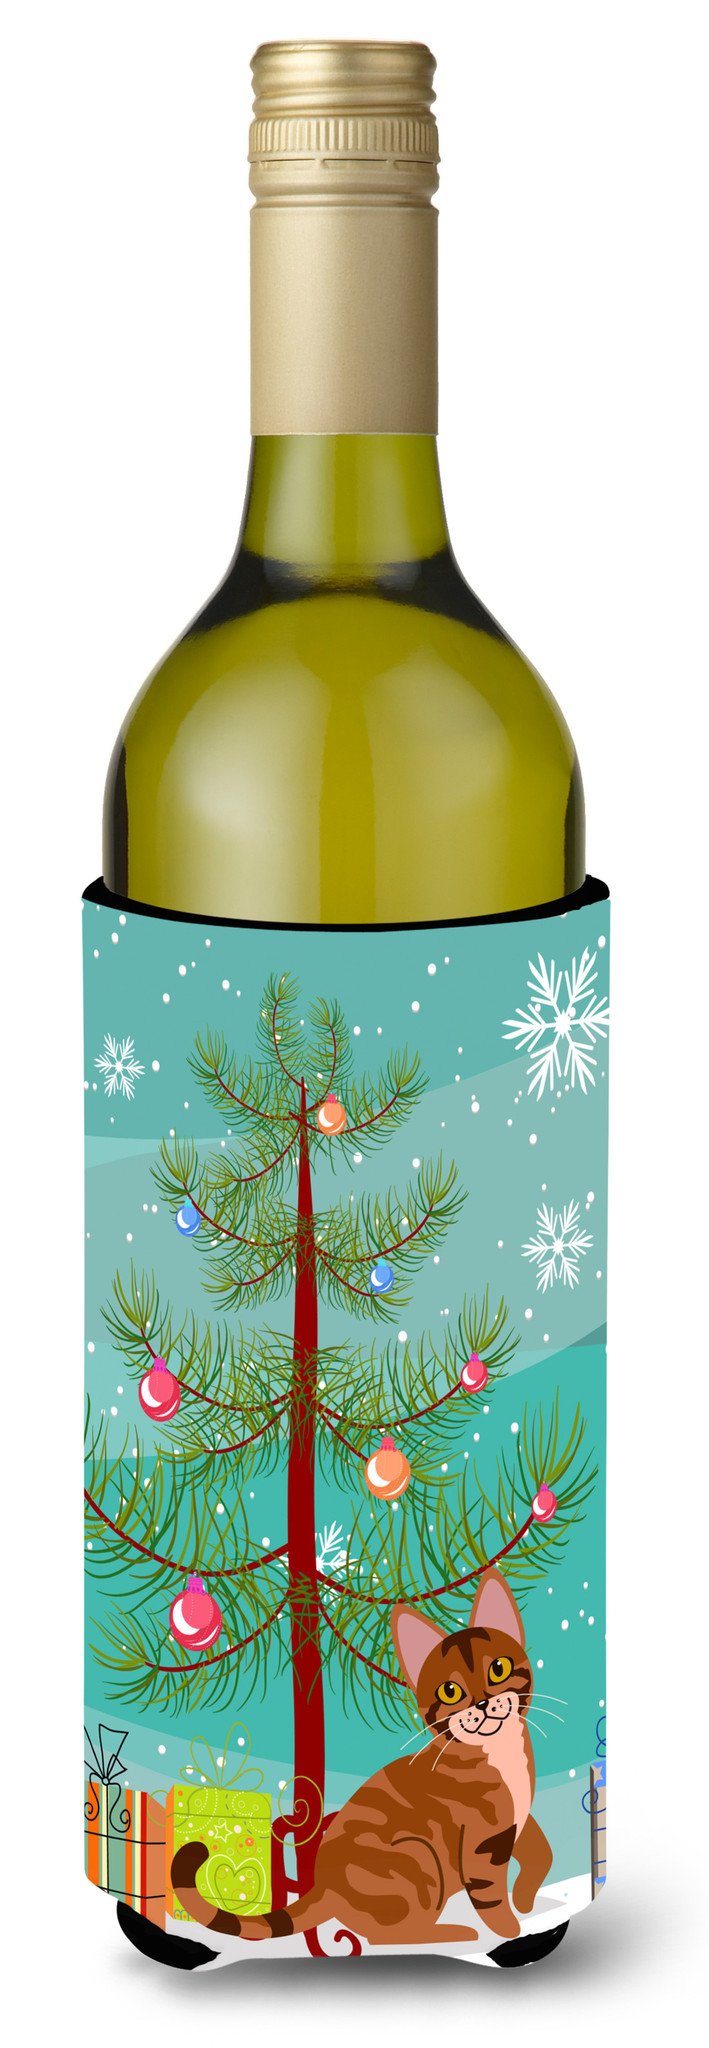 Sokoke Cat Merry Christmas Tree Wine Bottle Beverge Insulator Hugger BB4431LITERK by Caroline's Treasures